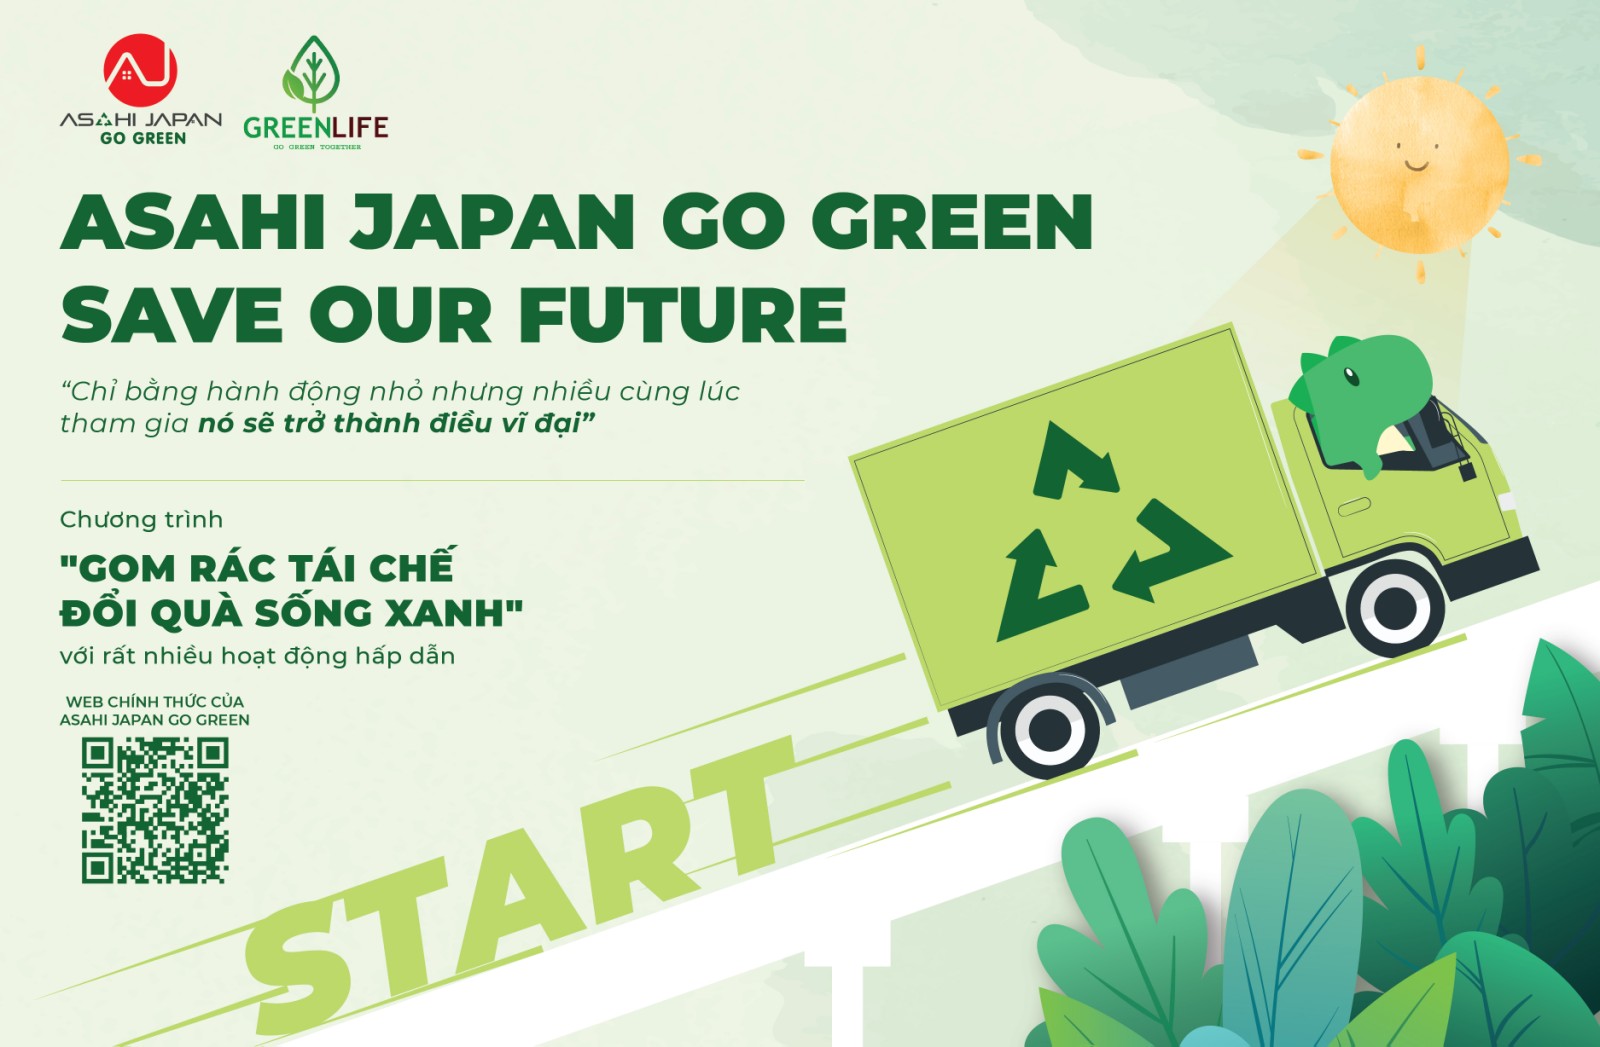 Đơn vị quản lý bất động sản Asahi Japan triển khai chương trình Asahi Japan Go Green - Save Our Future